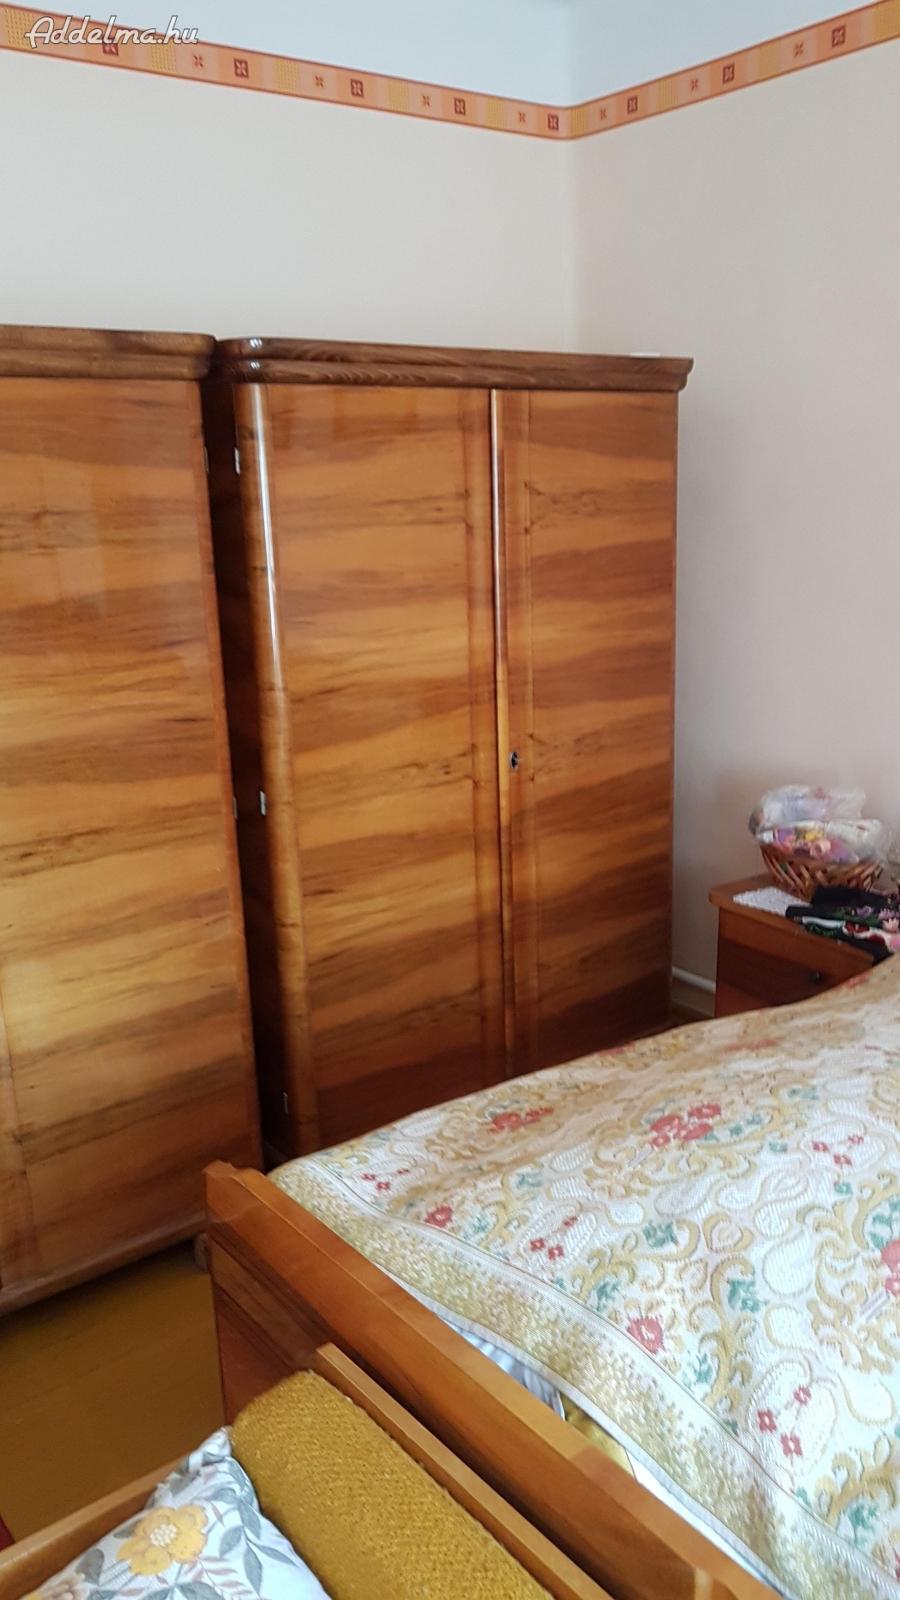 Eladó szép állapotban lévő Erzsébet hálószoba bútor